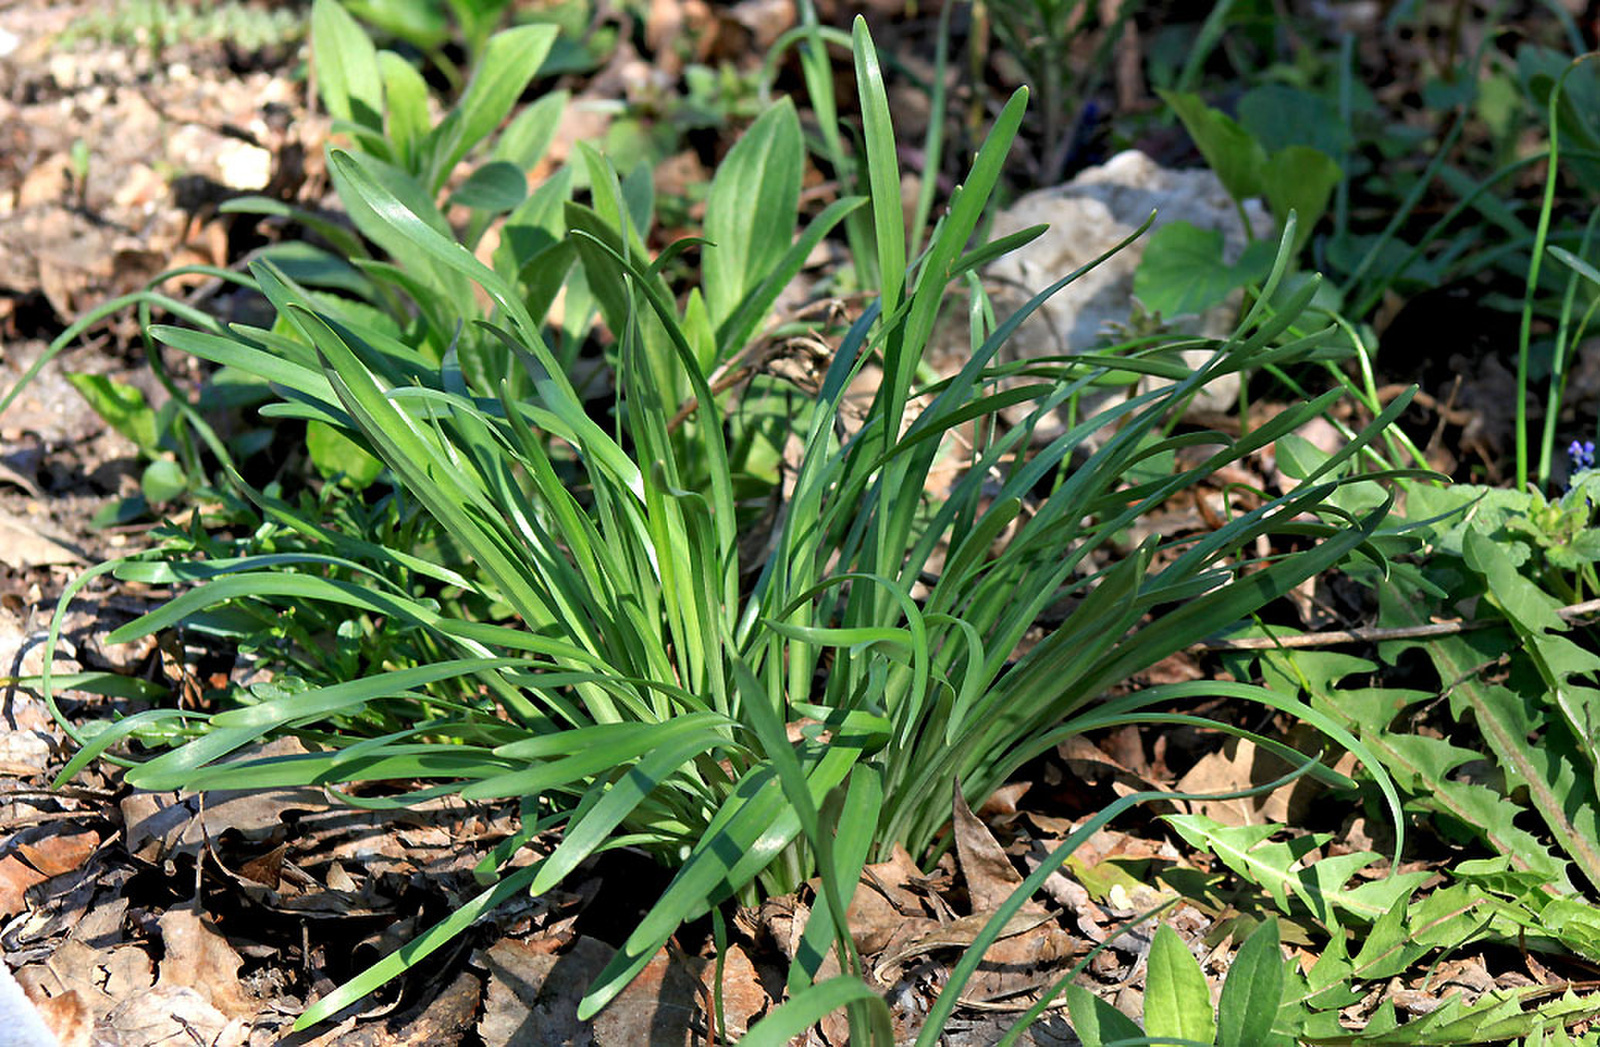 Sternbergia colchiciflora - apró vetővirág, tavaszi tőlevelek